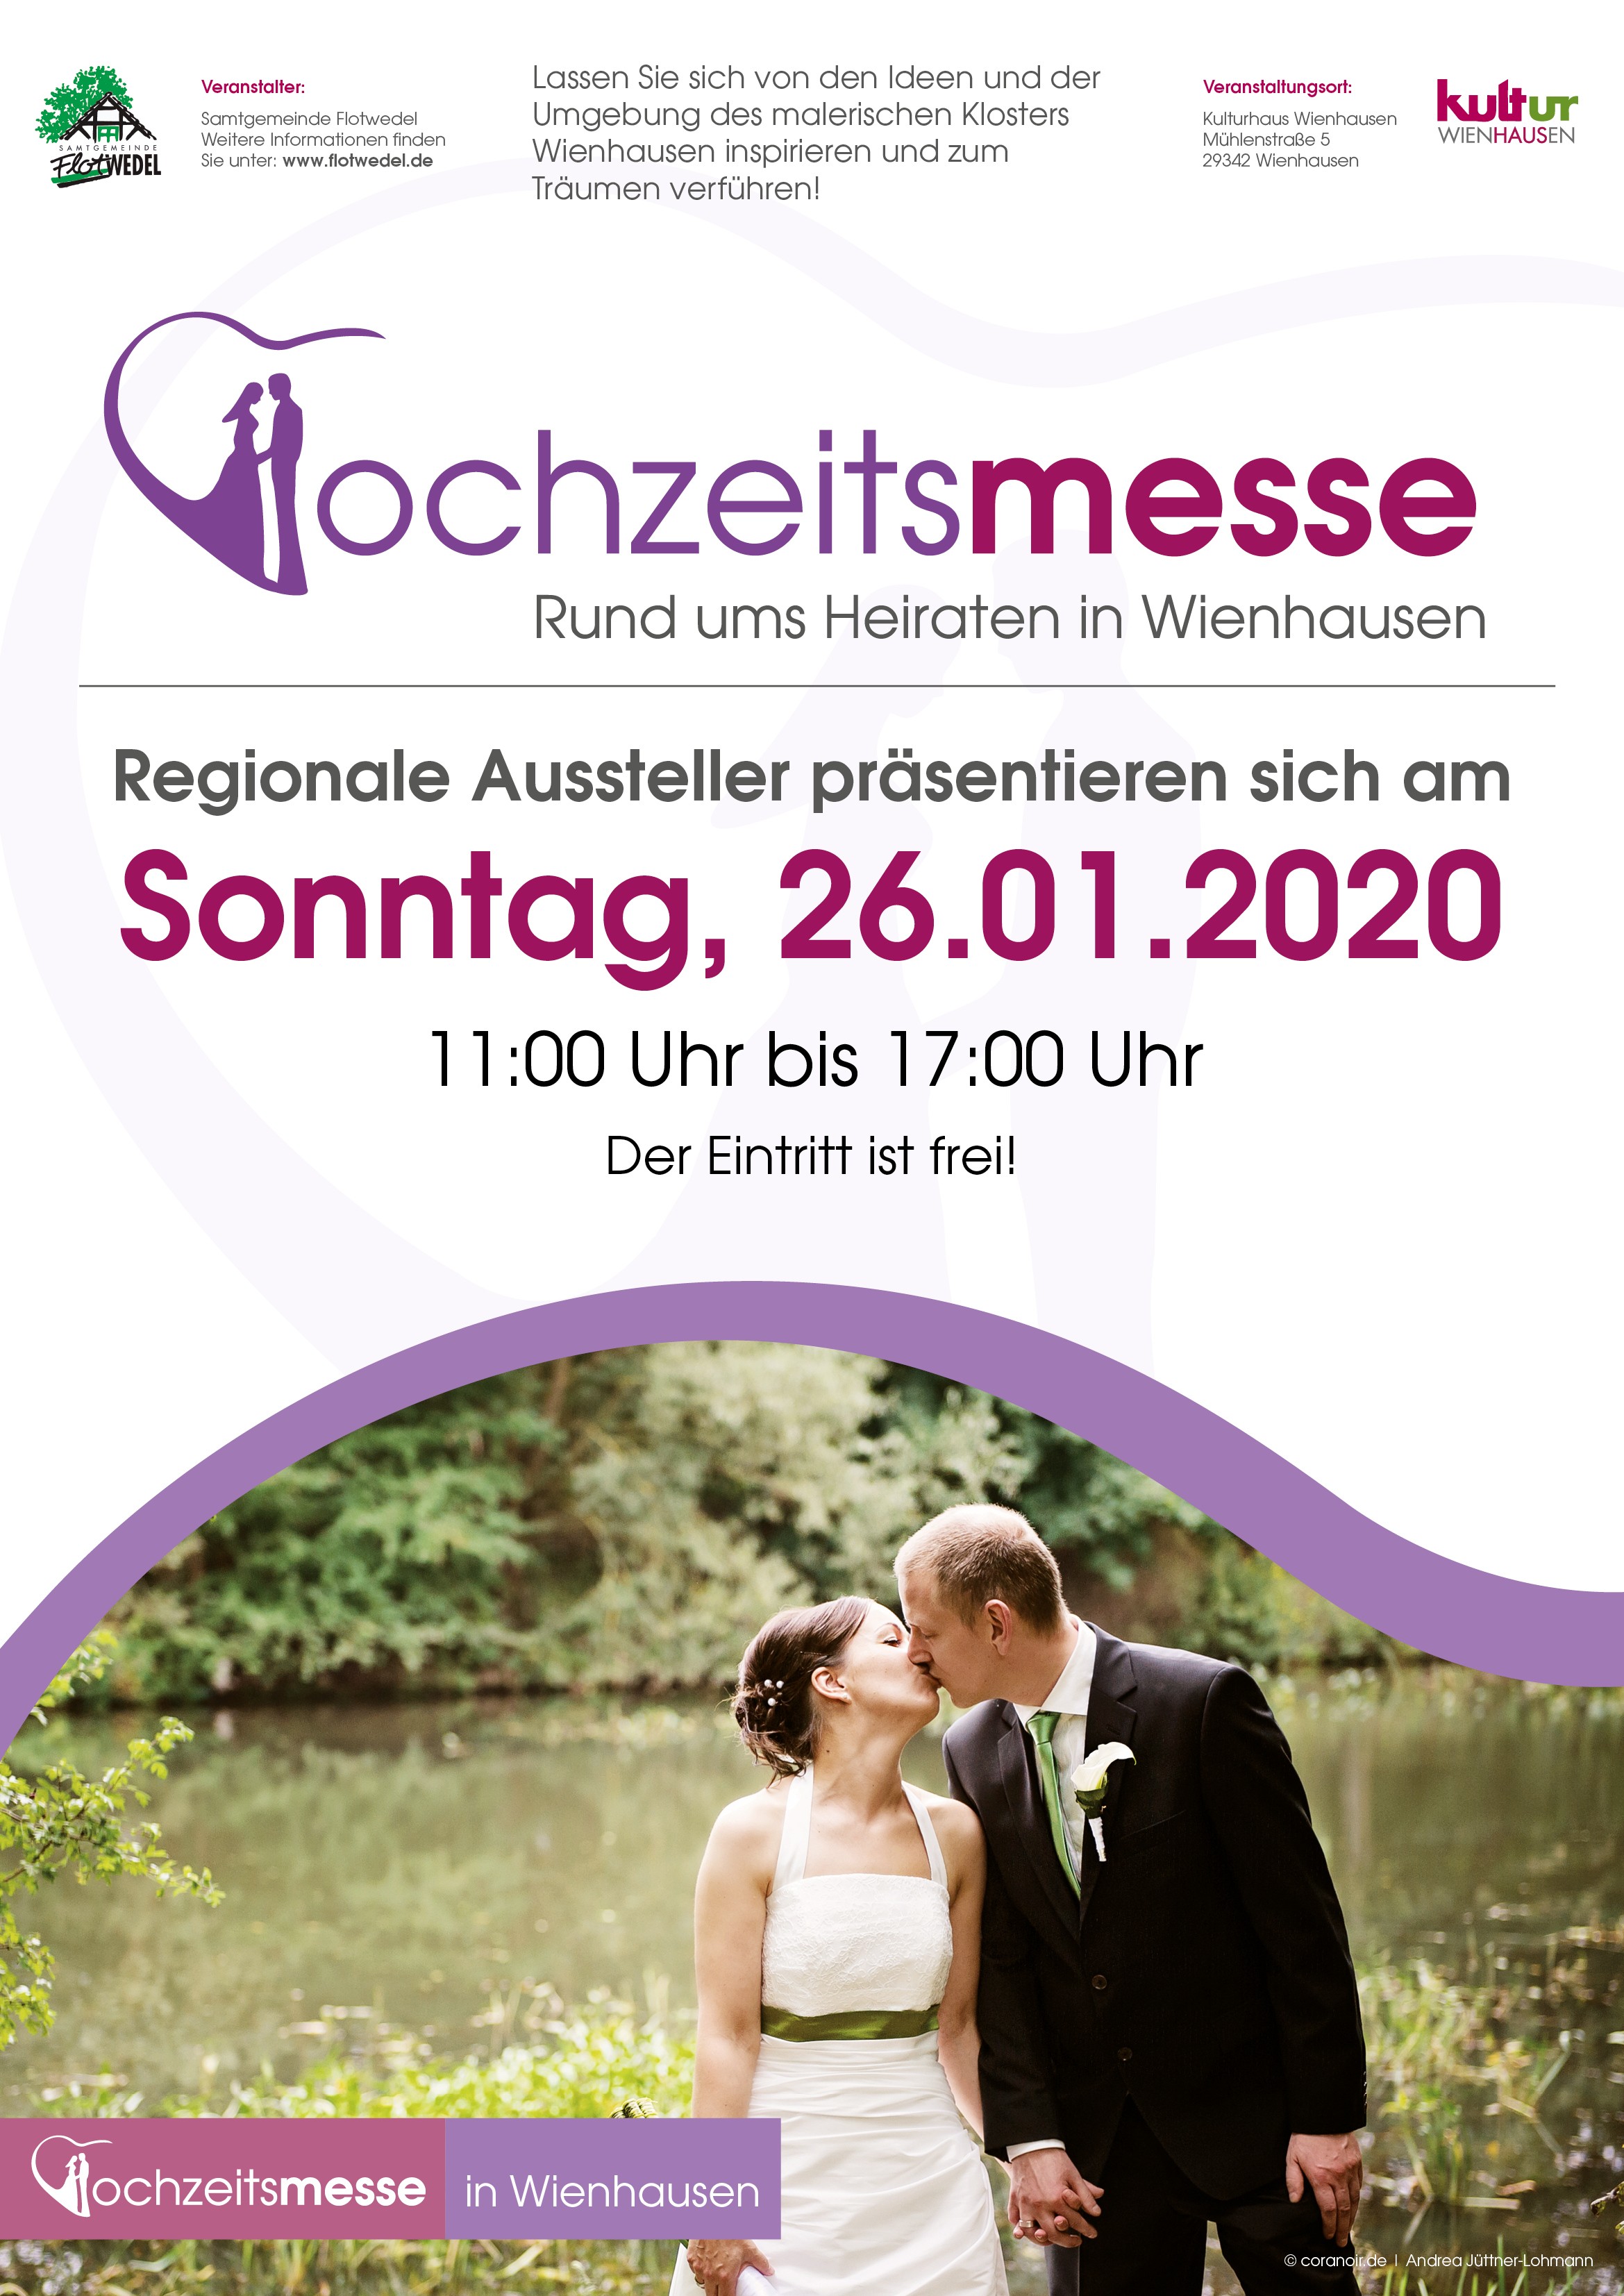 Hochzeitsmesse Wienhausen 26.01.2020